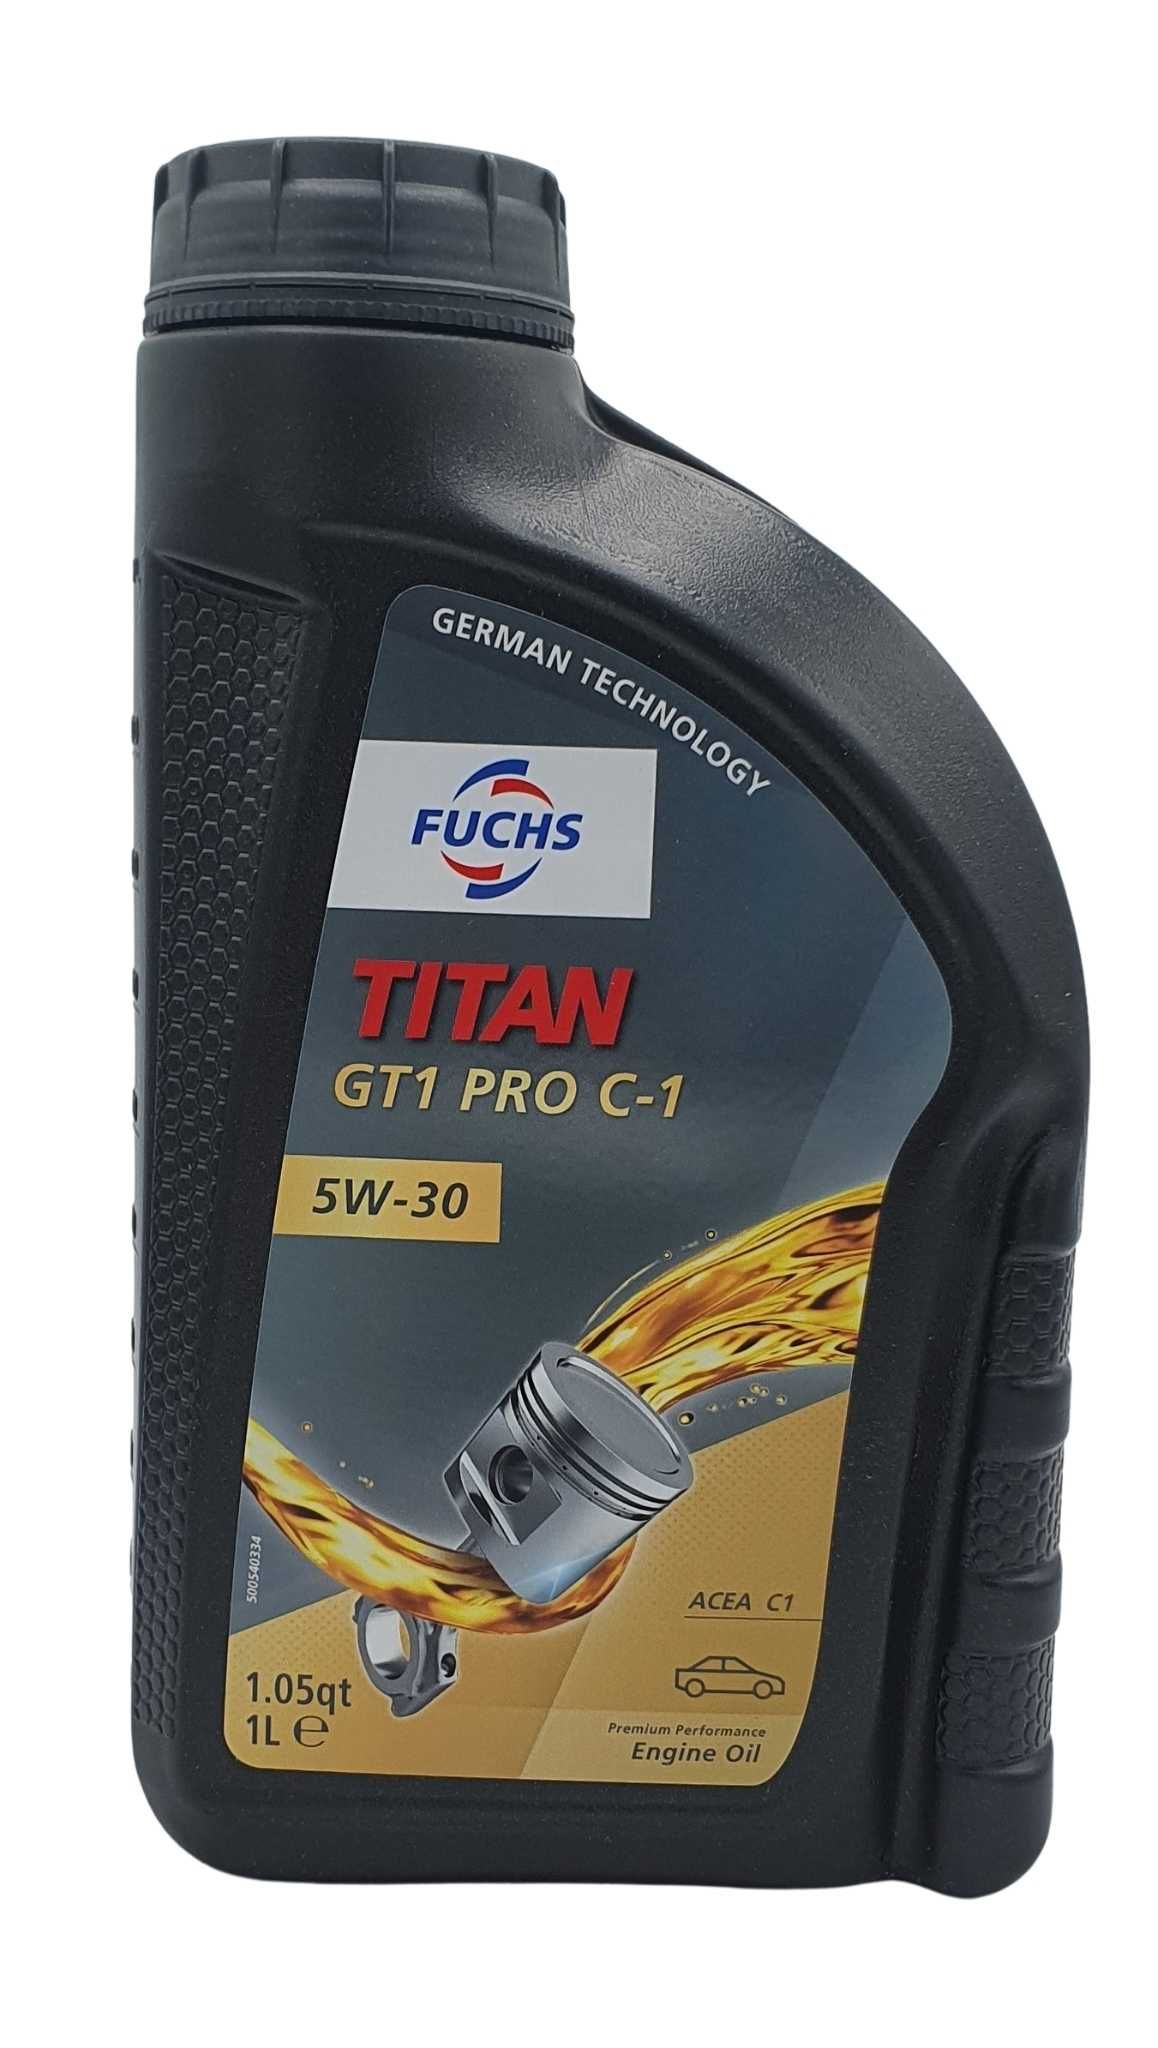 Fuchs Titan GT1 PRO C-1 5W-30 1 Liter